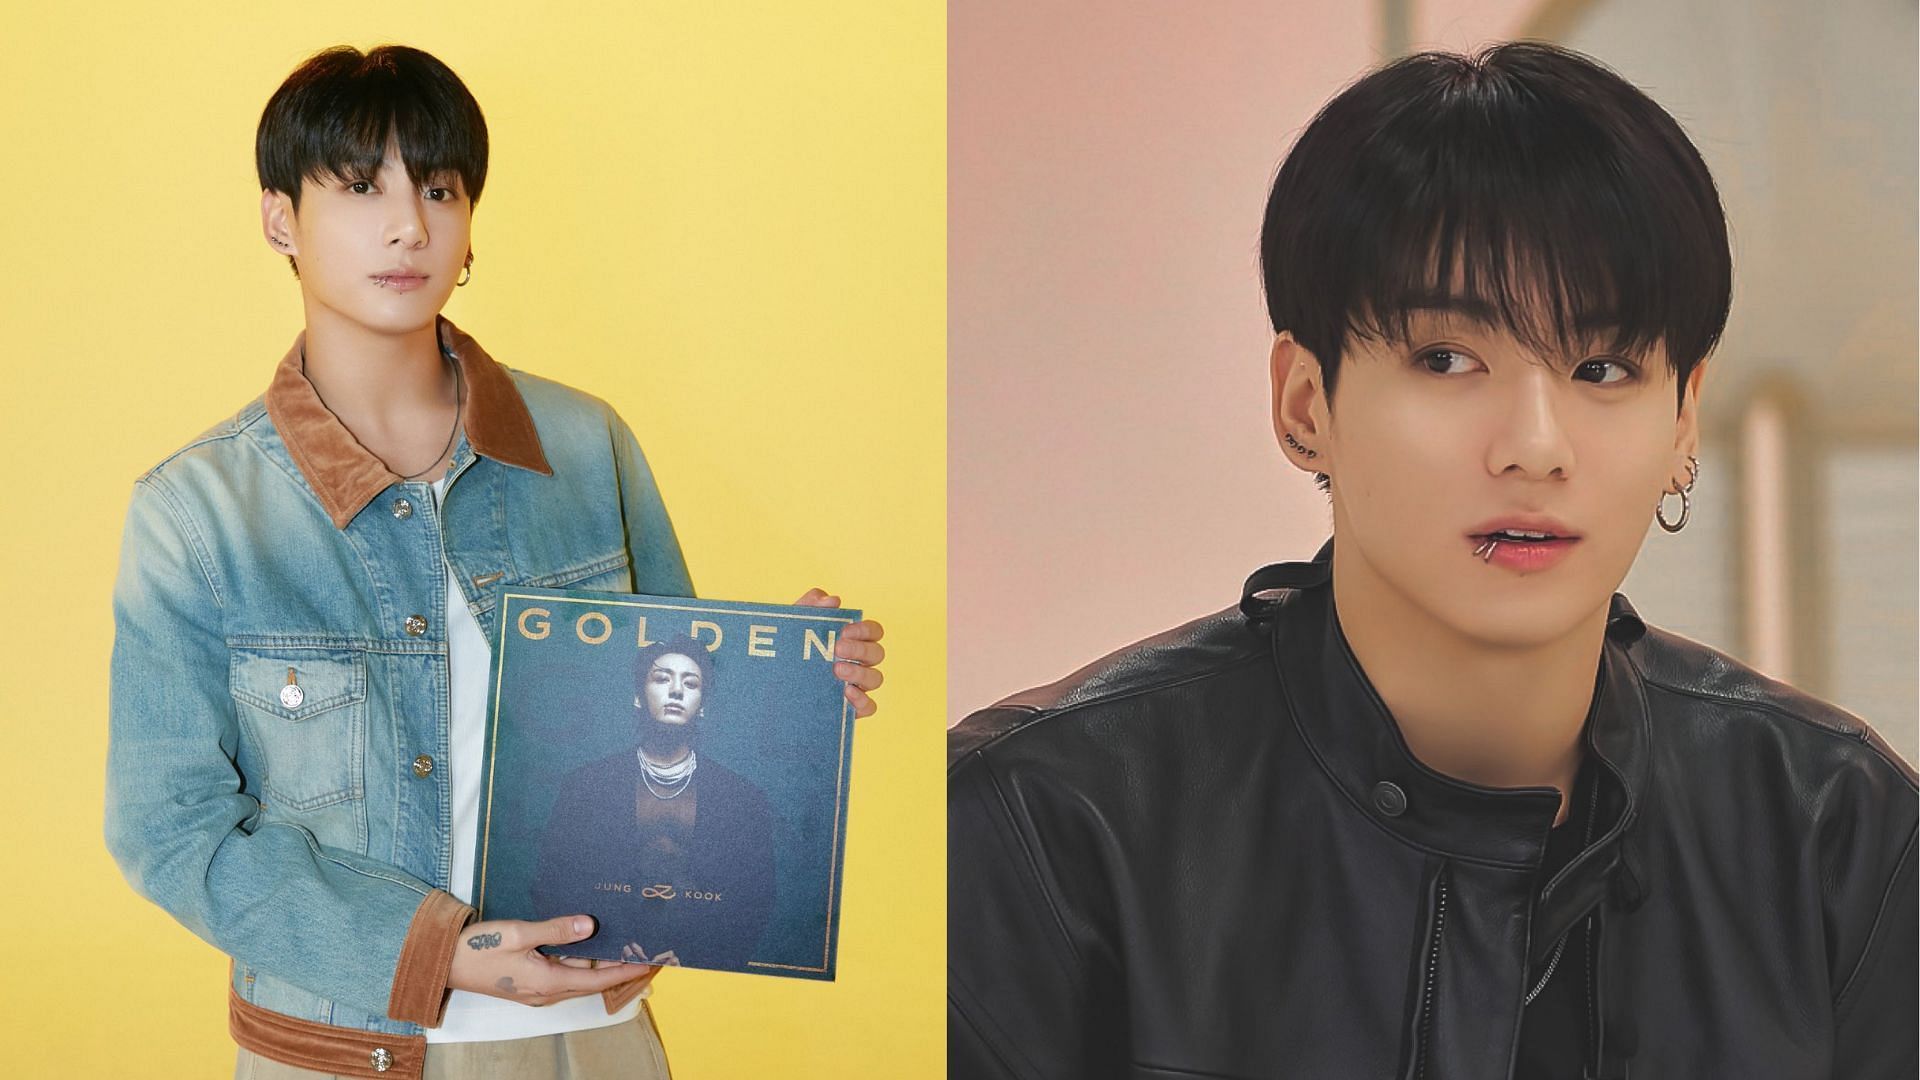 Perigon Bts Jungkook To Release Debut Solo Album Golden